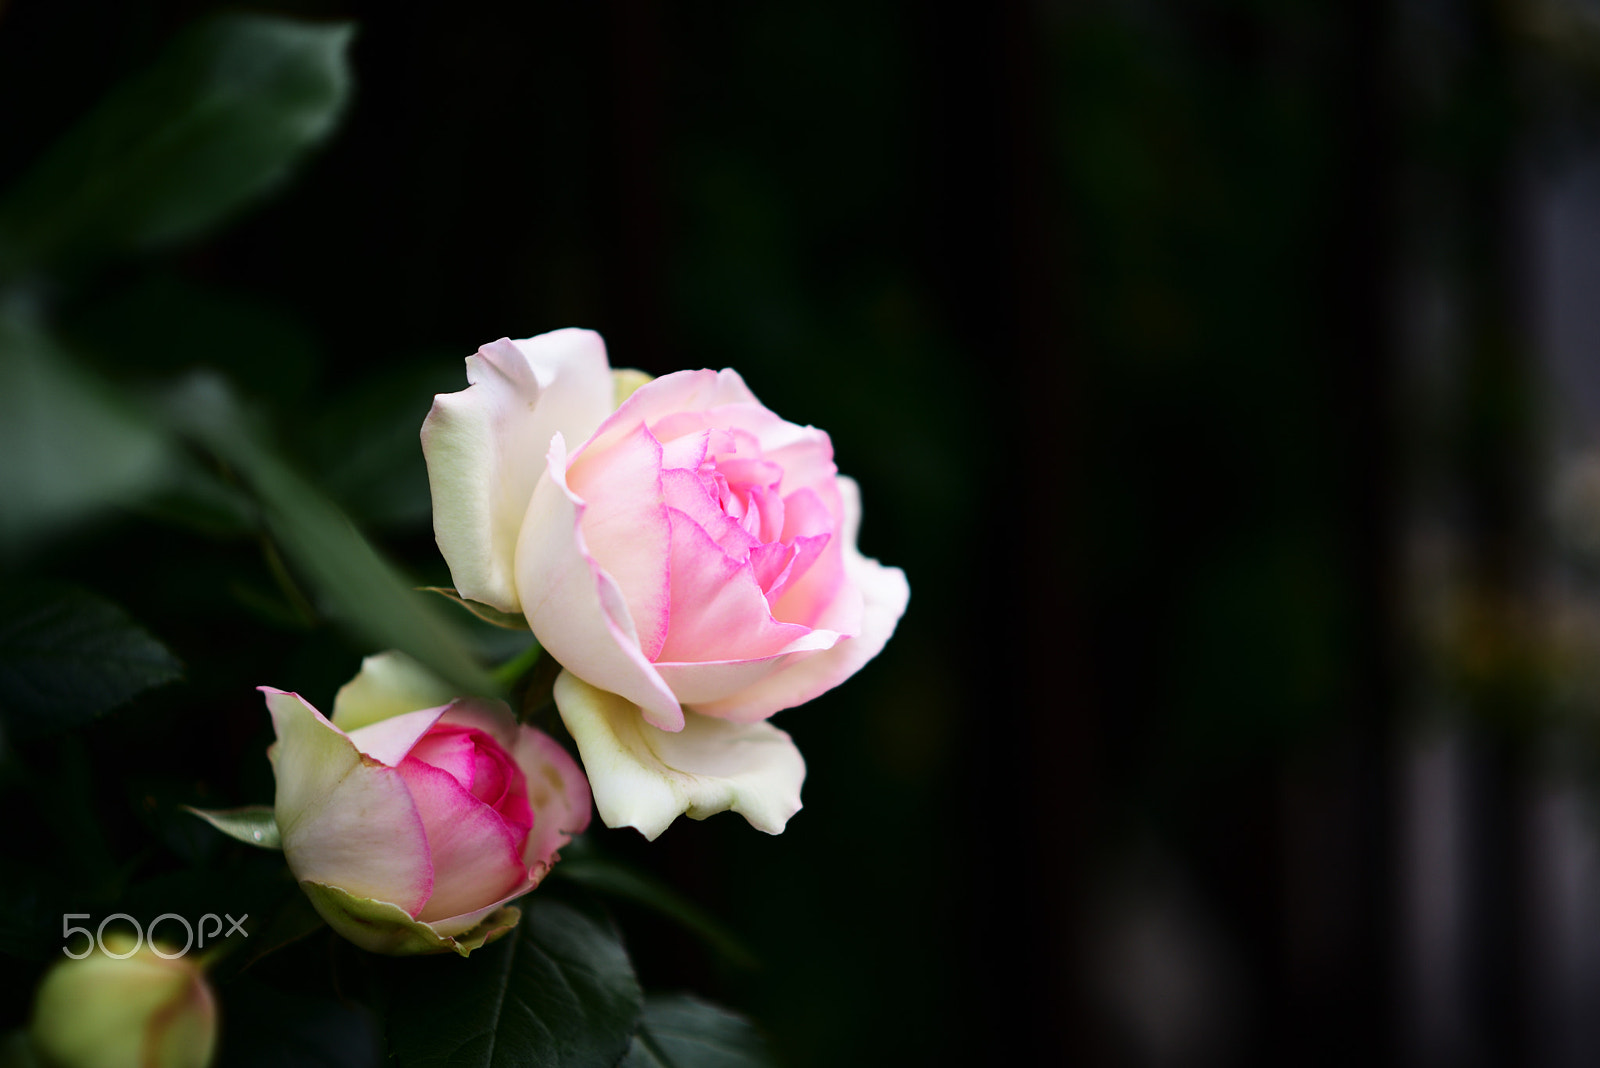 Nikon AF-S Nikkor 85mm F1.8G sample photo. Pink roses photography